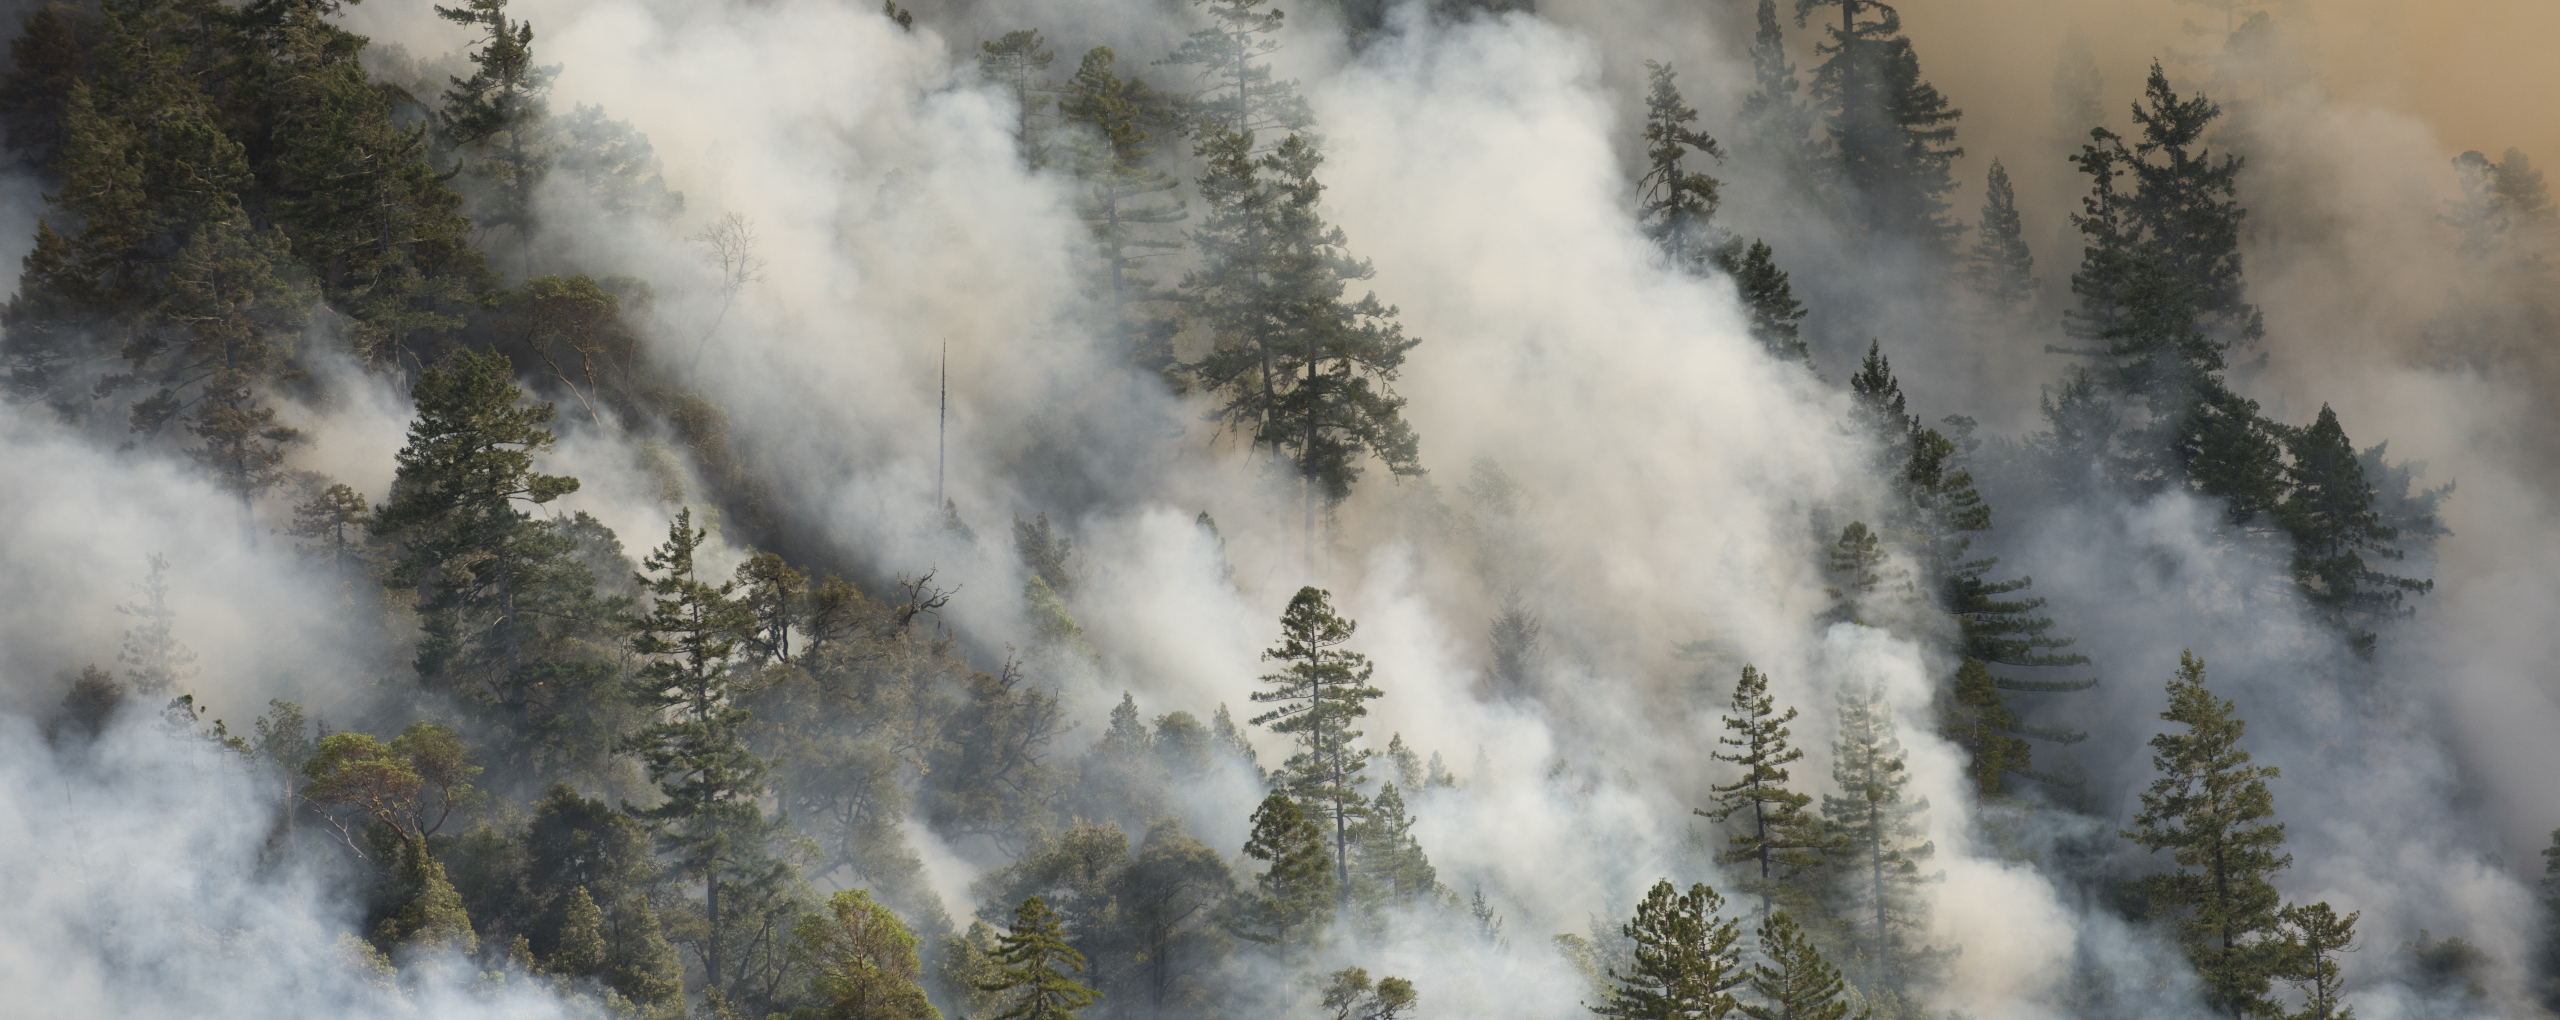 Restauration suite aux feux de forêt à Mendocino, Californie